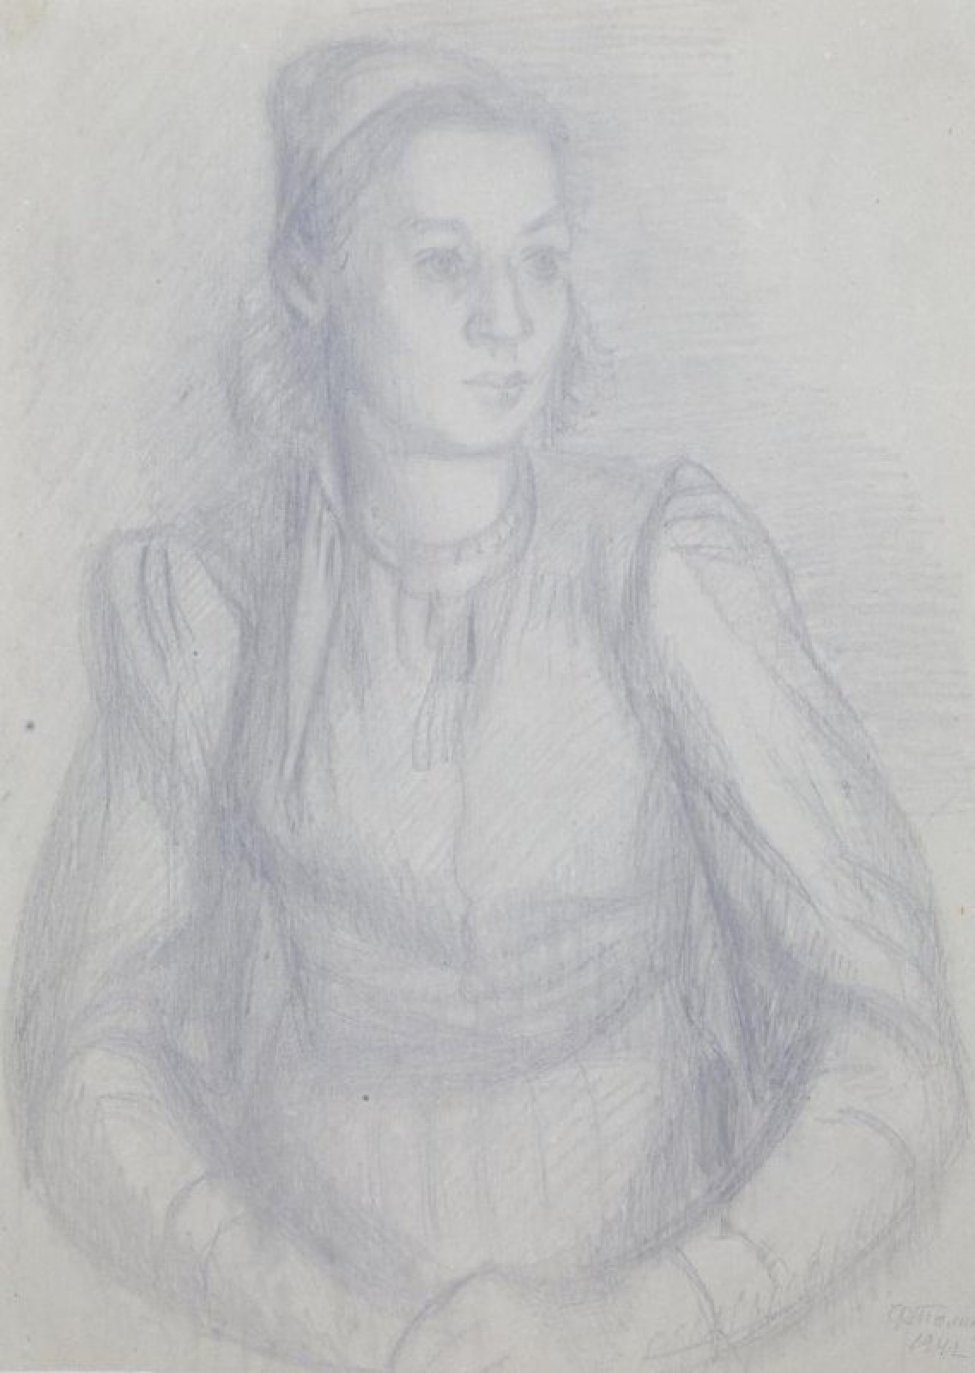 Победренное изображение сидящей девушки с короткими волосами, в легком  повороте влево; руки сложены на коленях.